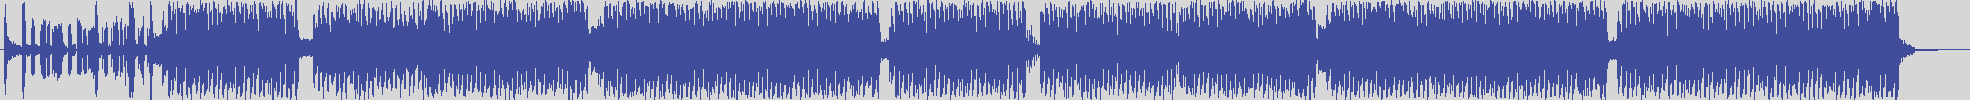 definitiva [DEF002] A'n'n', Amy, Nelly Dj - My Song [Original Cut] audio wave form